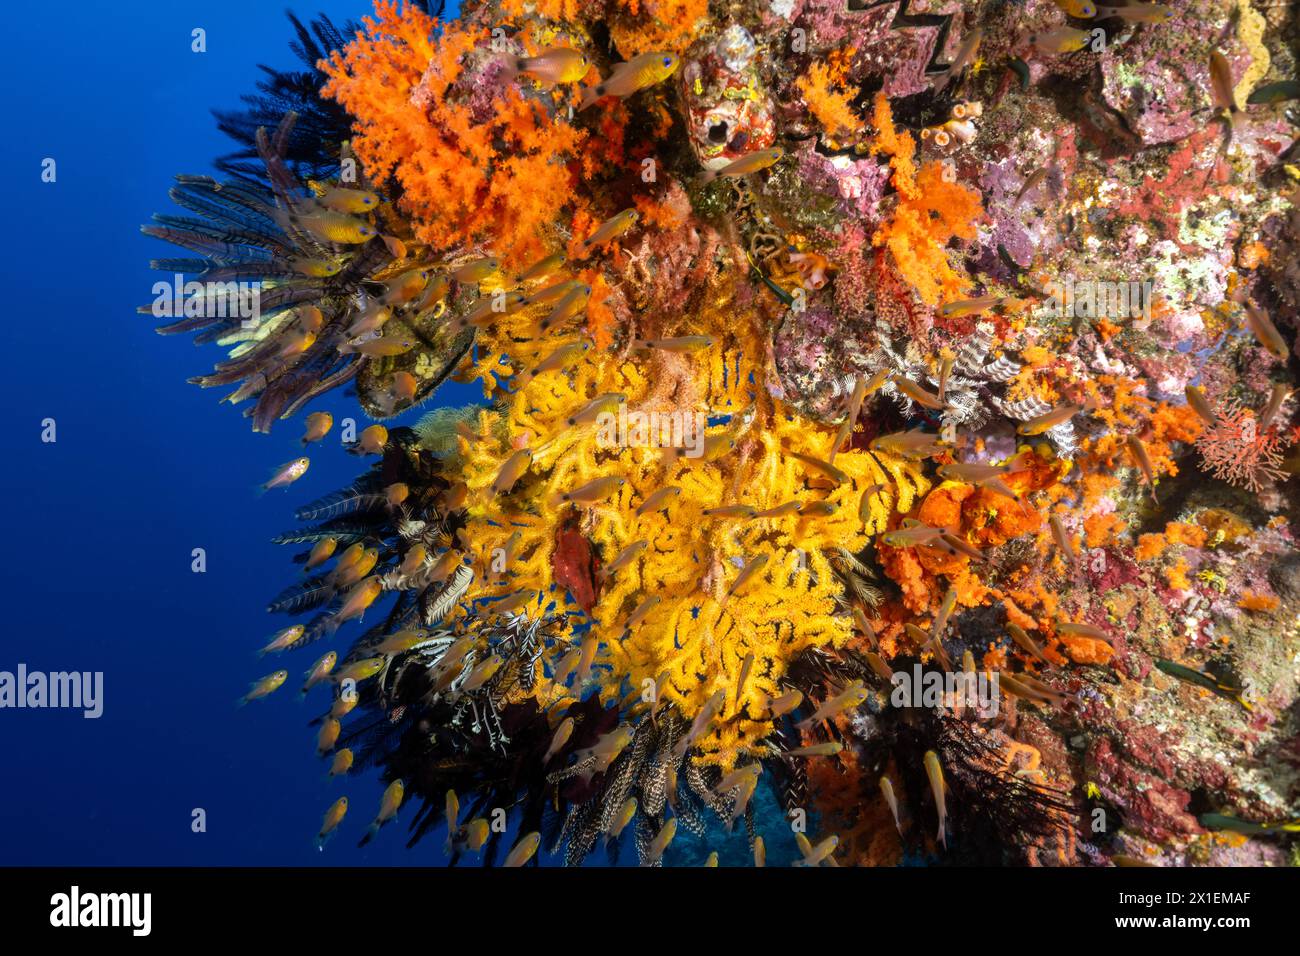 Récif coloré pittoresque avec des coraux mous, des crinoïdes et des poissons cardinaux annelés, Apogon aureus, Raja Ampat Indonésie. Banque D'Images